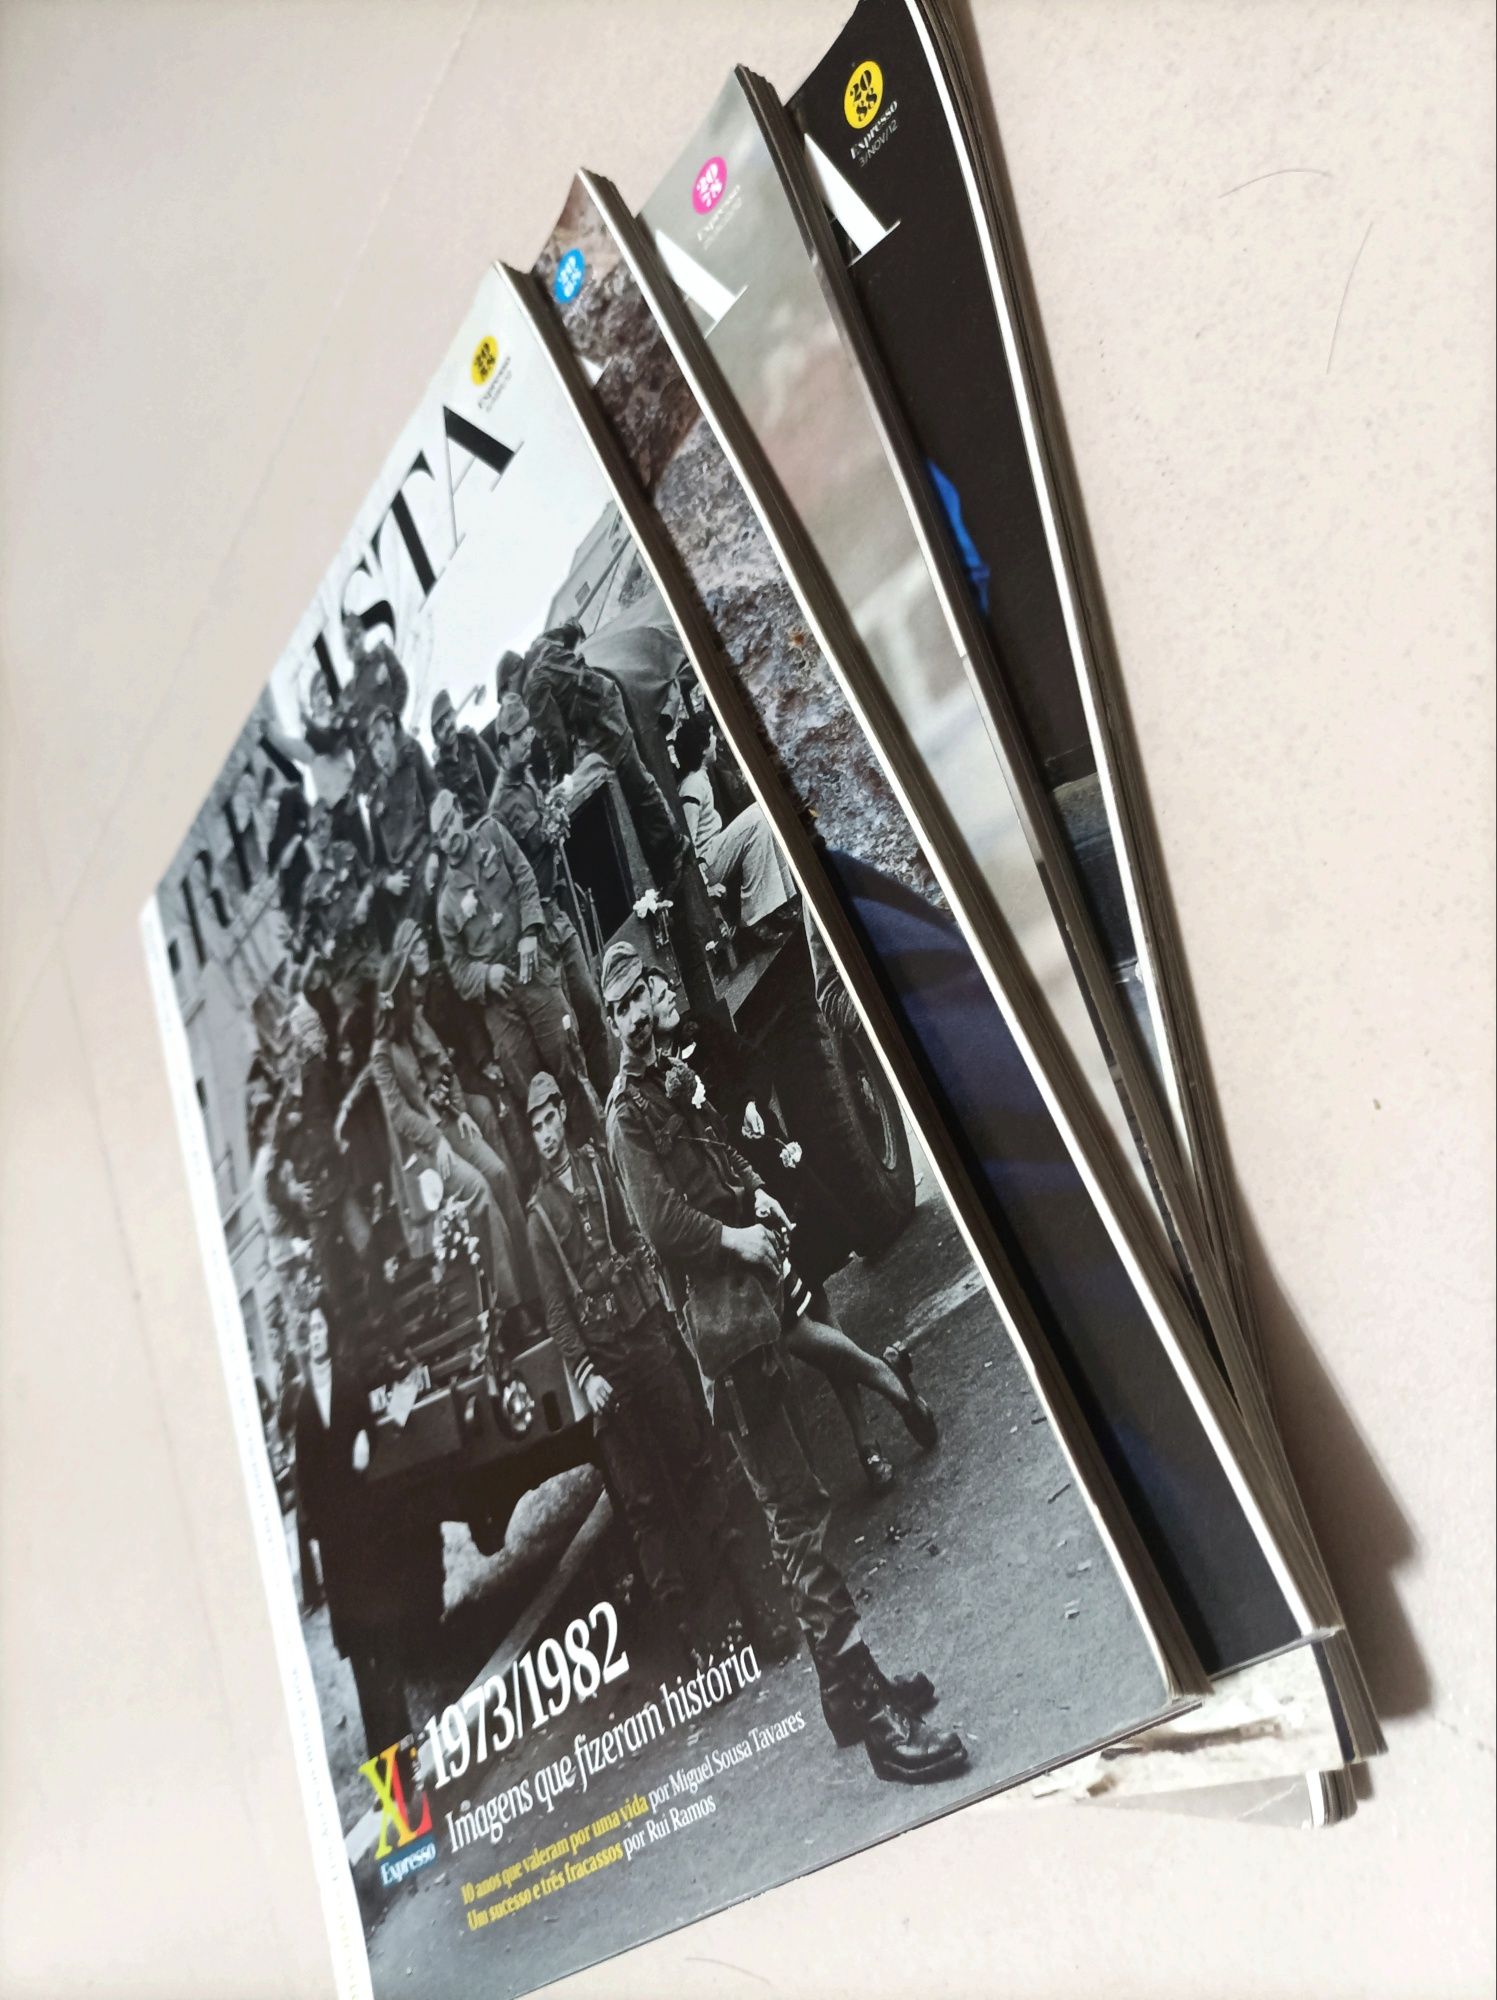 Coleção Revistas Expresso XL 40 Anos (1973/2013)